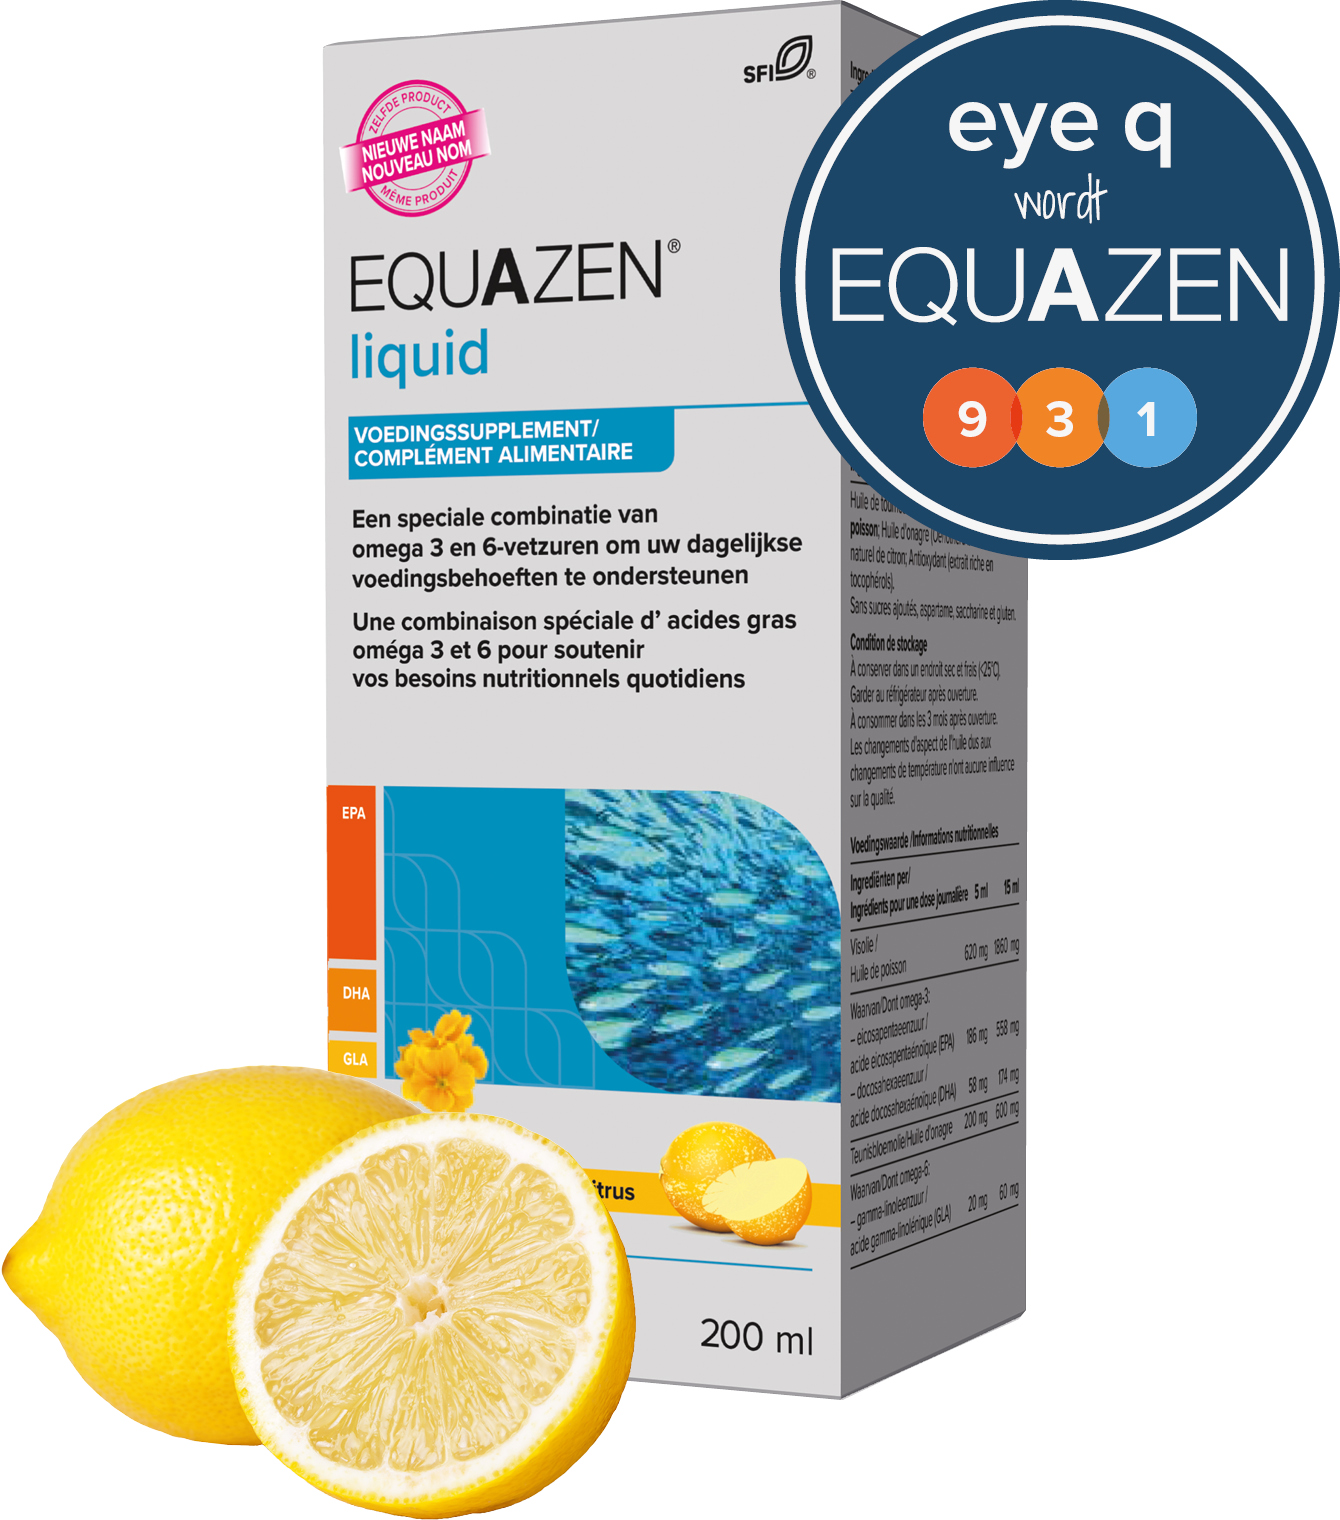 Equazen liquid - omega 3- en 6-vetzuren EPA, DHA, GLA - Eye Q wordt Equazen